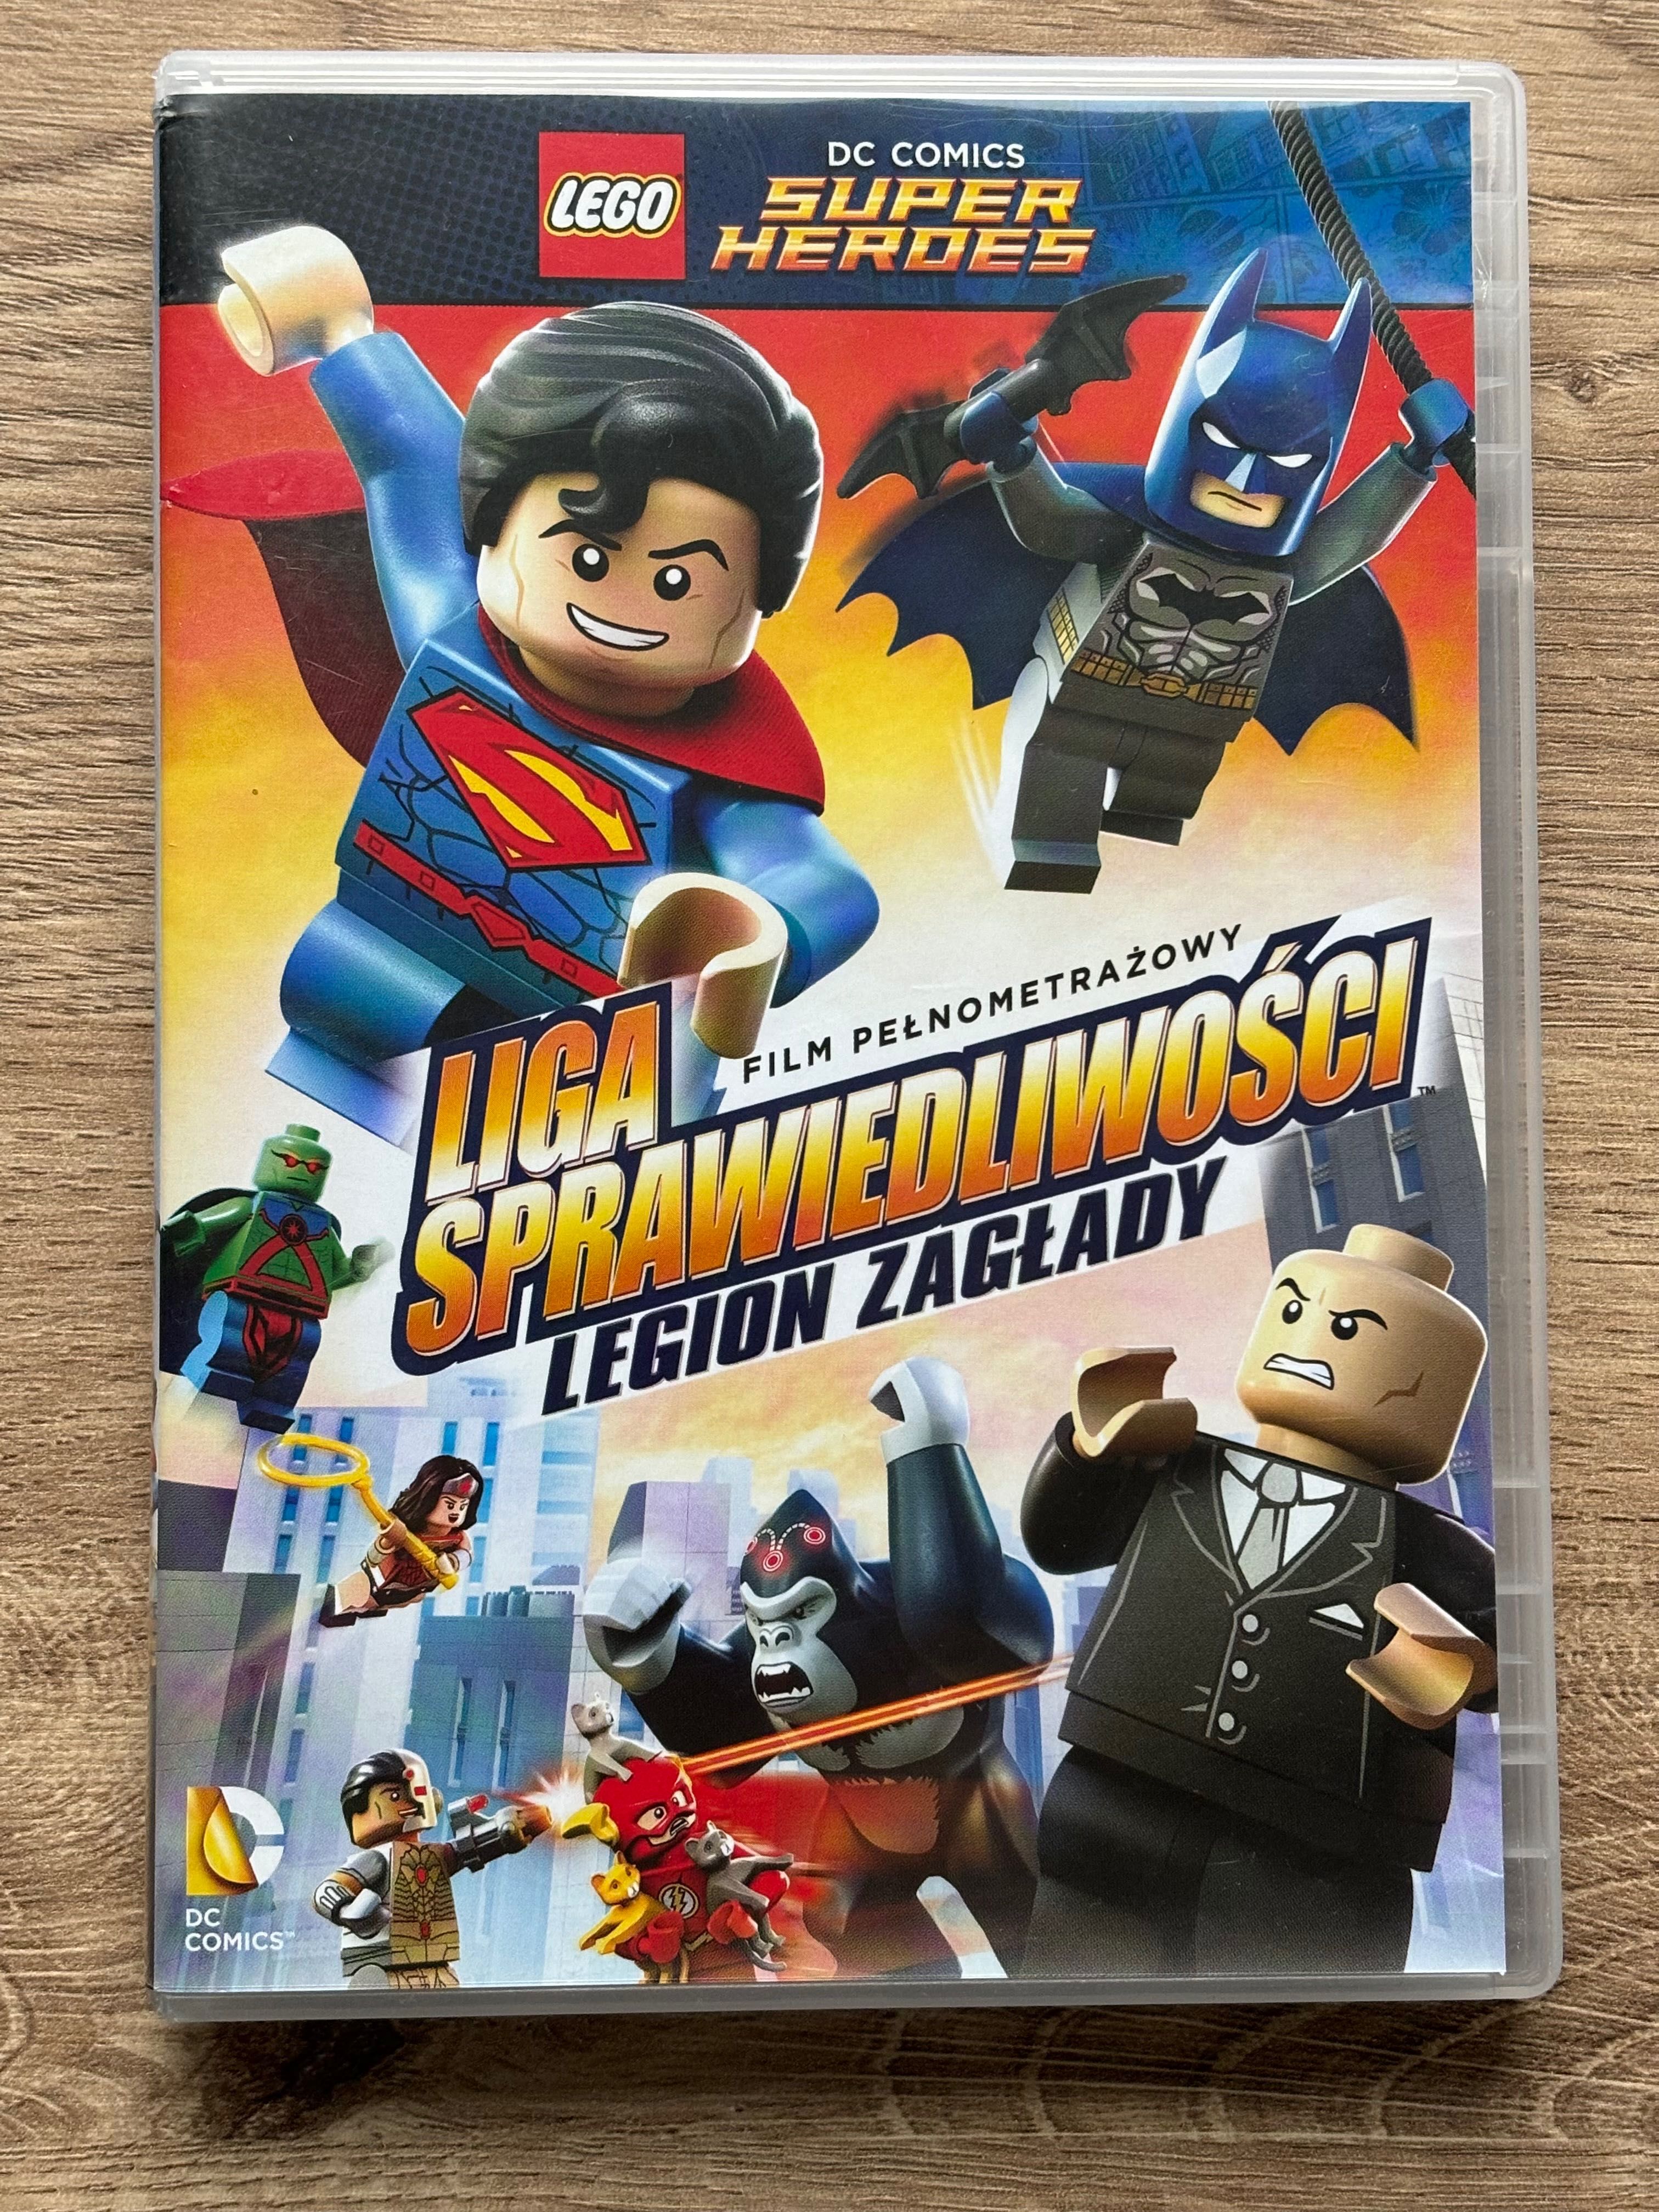 Lego DC Super Heroes - Liga Sprawiedliwości Legion Zagłady / bajka DVD